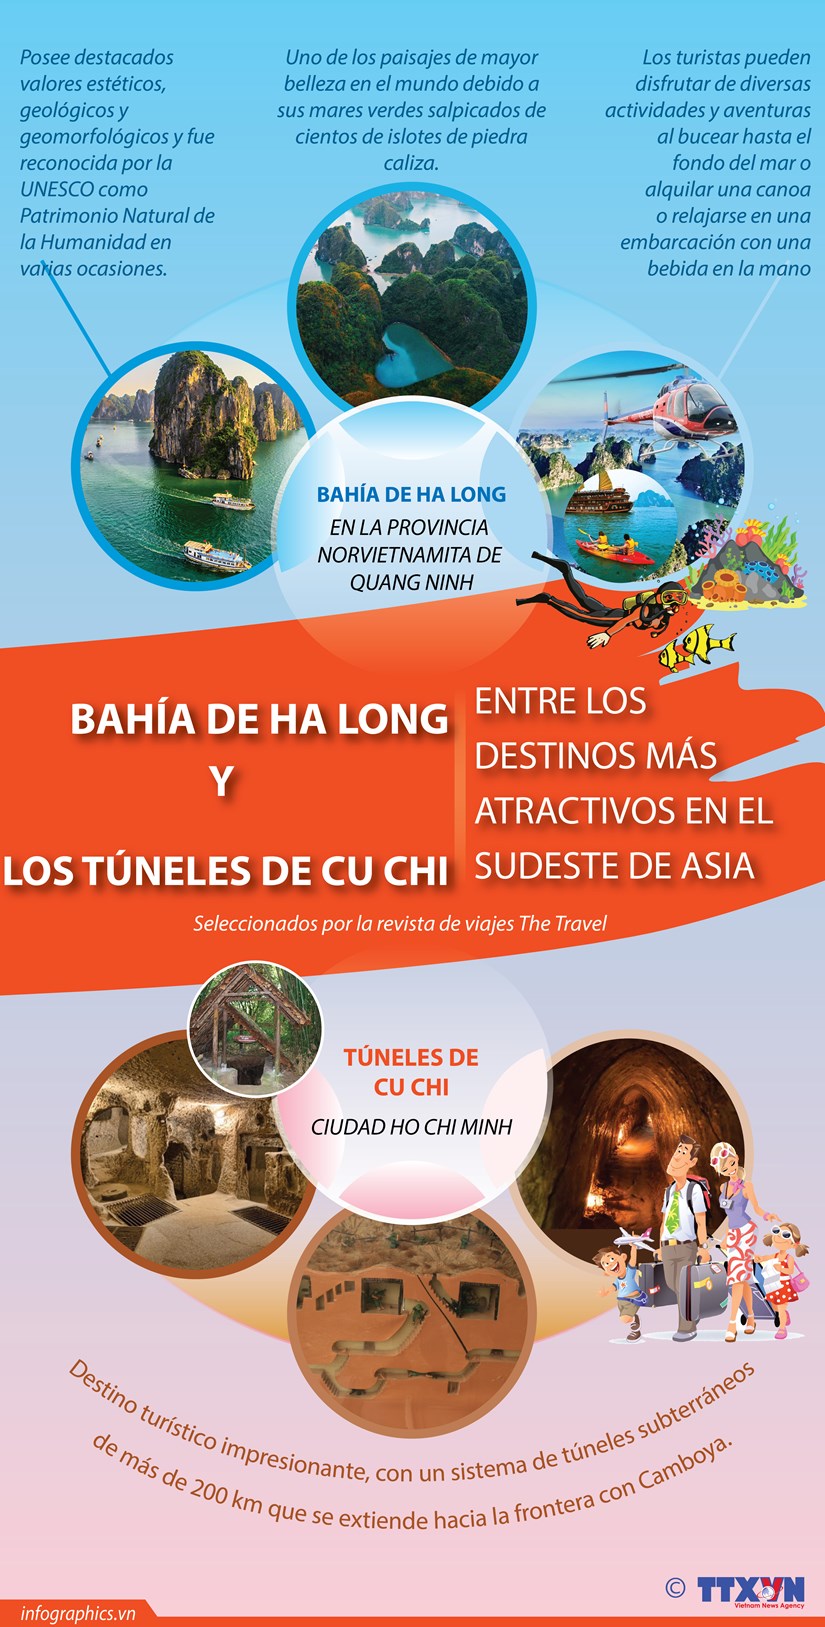 Bahia de Ha Long y tuneles de Cu Chi entre los destinos mas atractivos en Sudeste Asiatico hinh anh 1